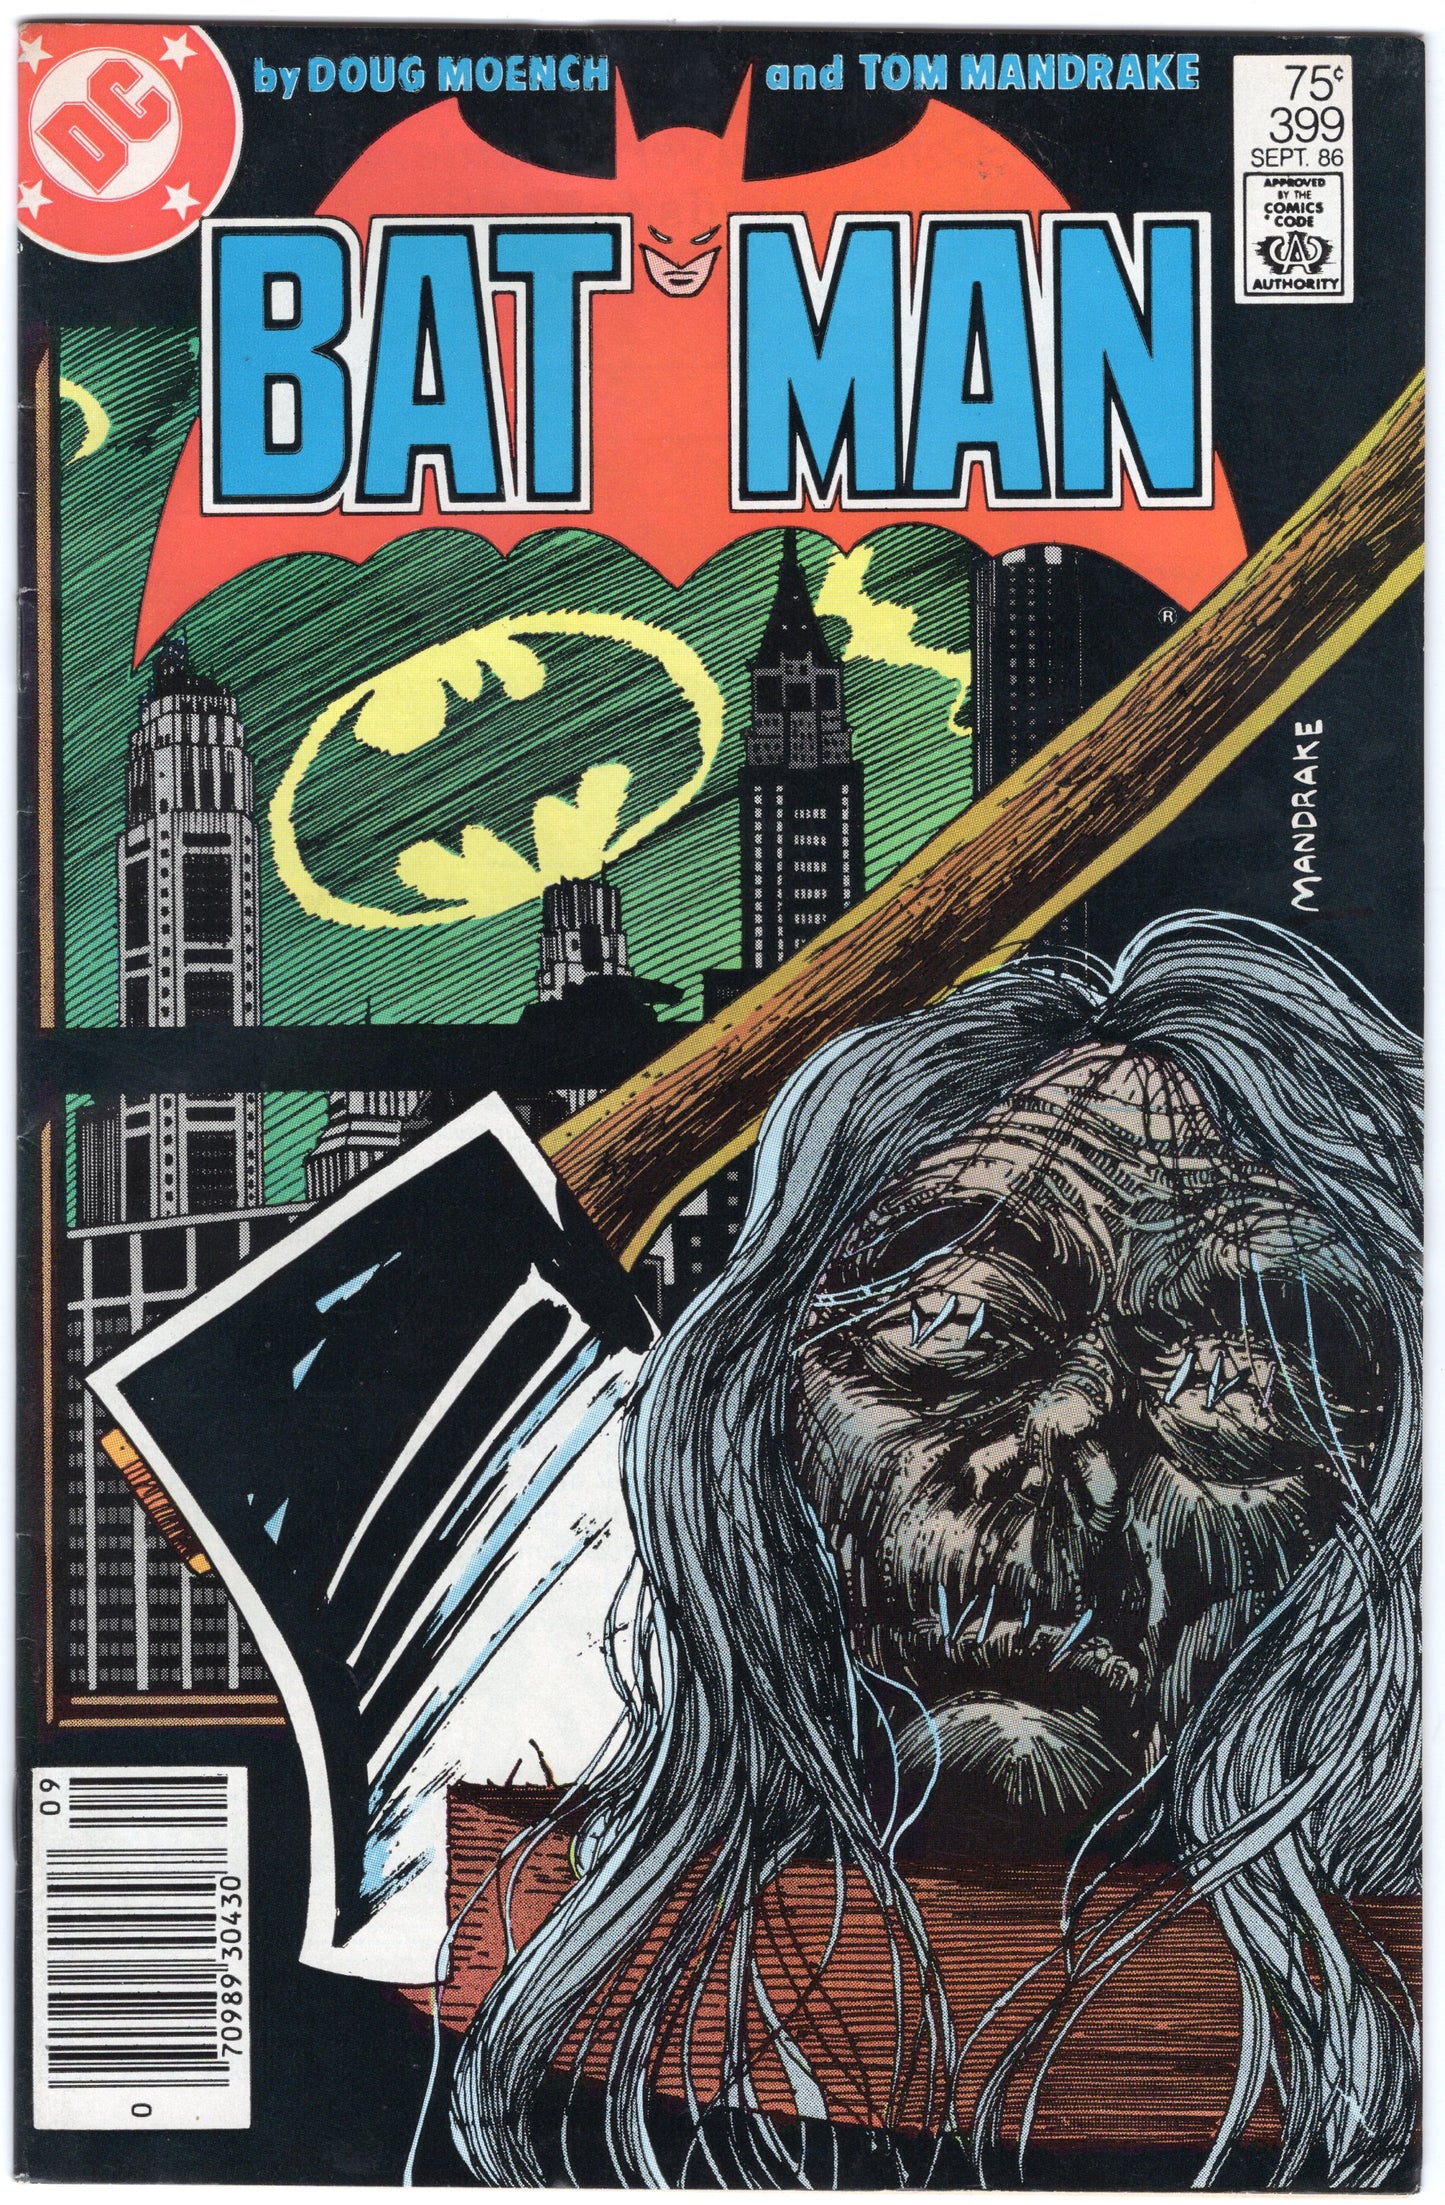 Batman - Issue #399 (Sept. 1986 - DC Comics) FN